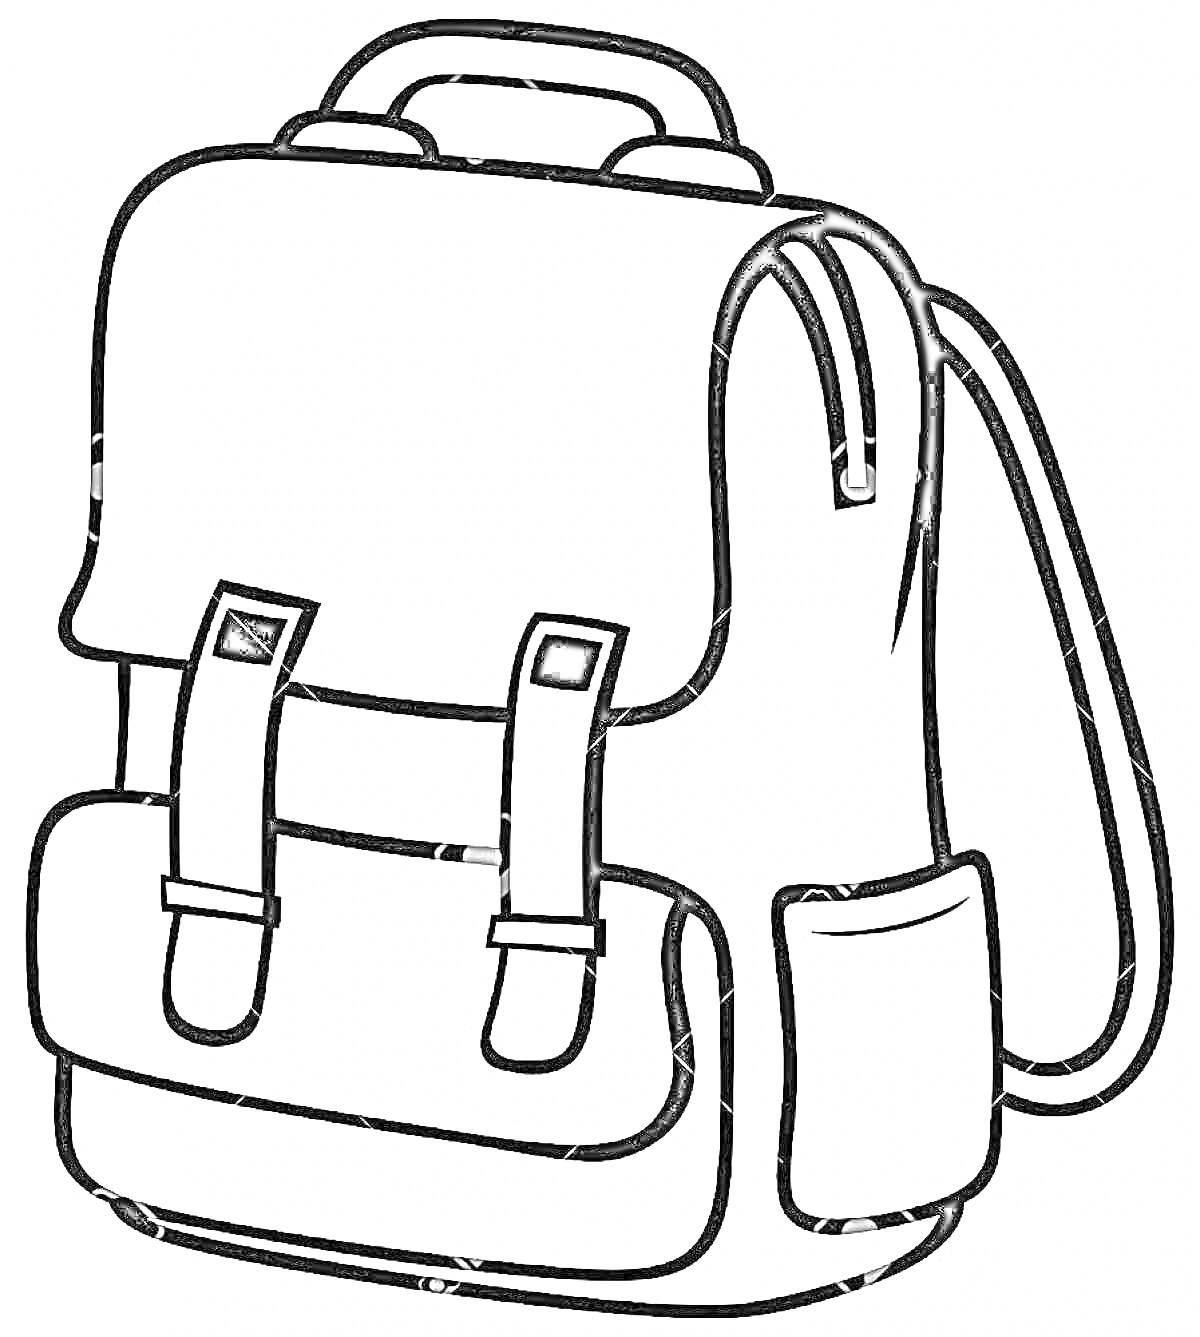 Рюкзак с верхним клапаном, двумя ремешками, передним карманом, двумя боковыми карманами и ручкой для переноски